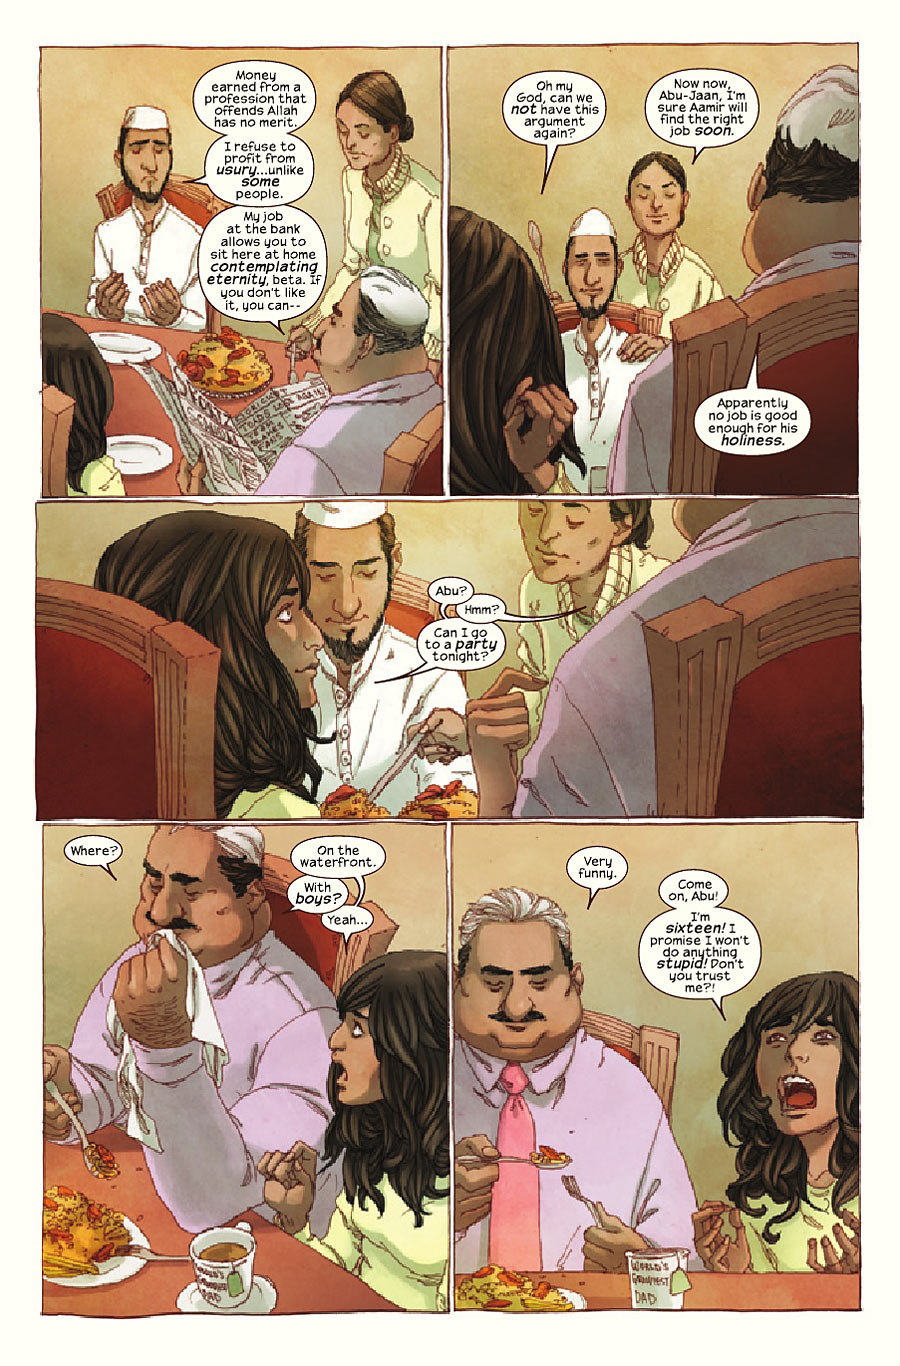 Ms. Marvel 4: Os Últimos Dias”, G. Willow Wilson e Adrian Alphona